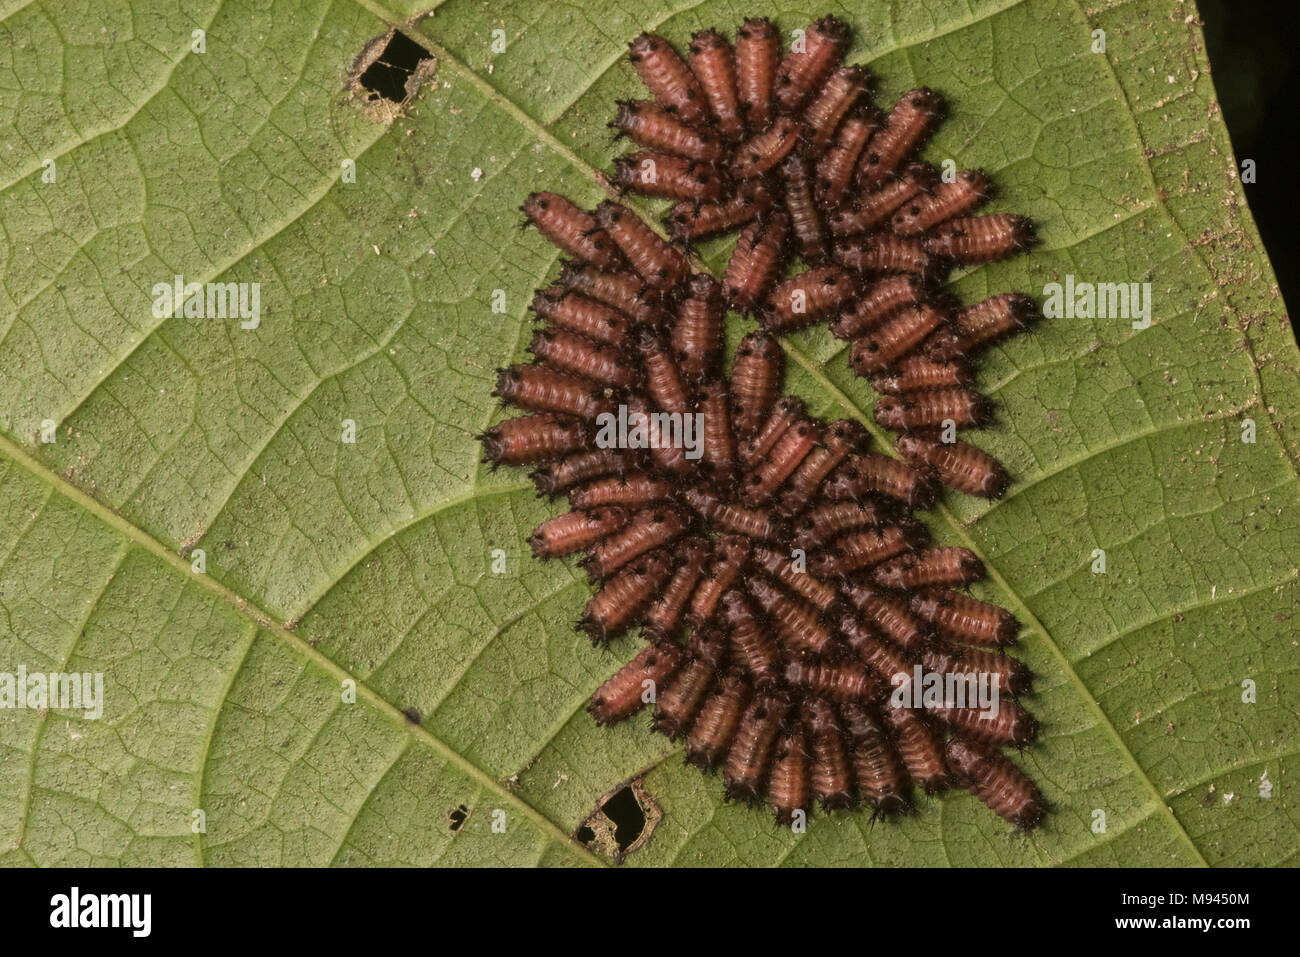 Stinging slug hi-res stock photography and images - Alamy